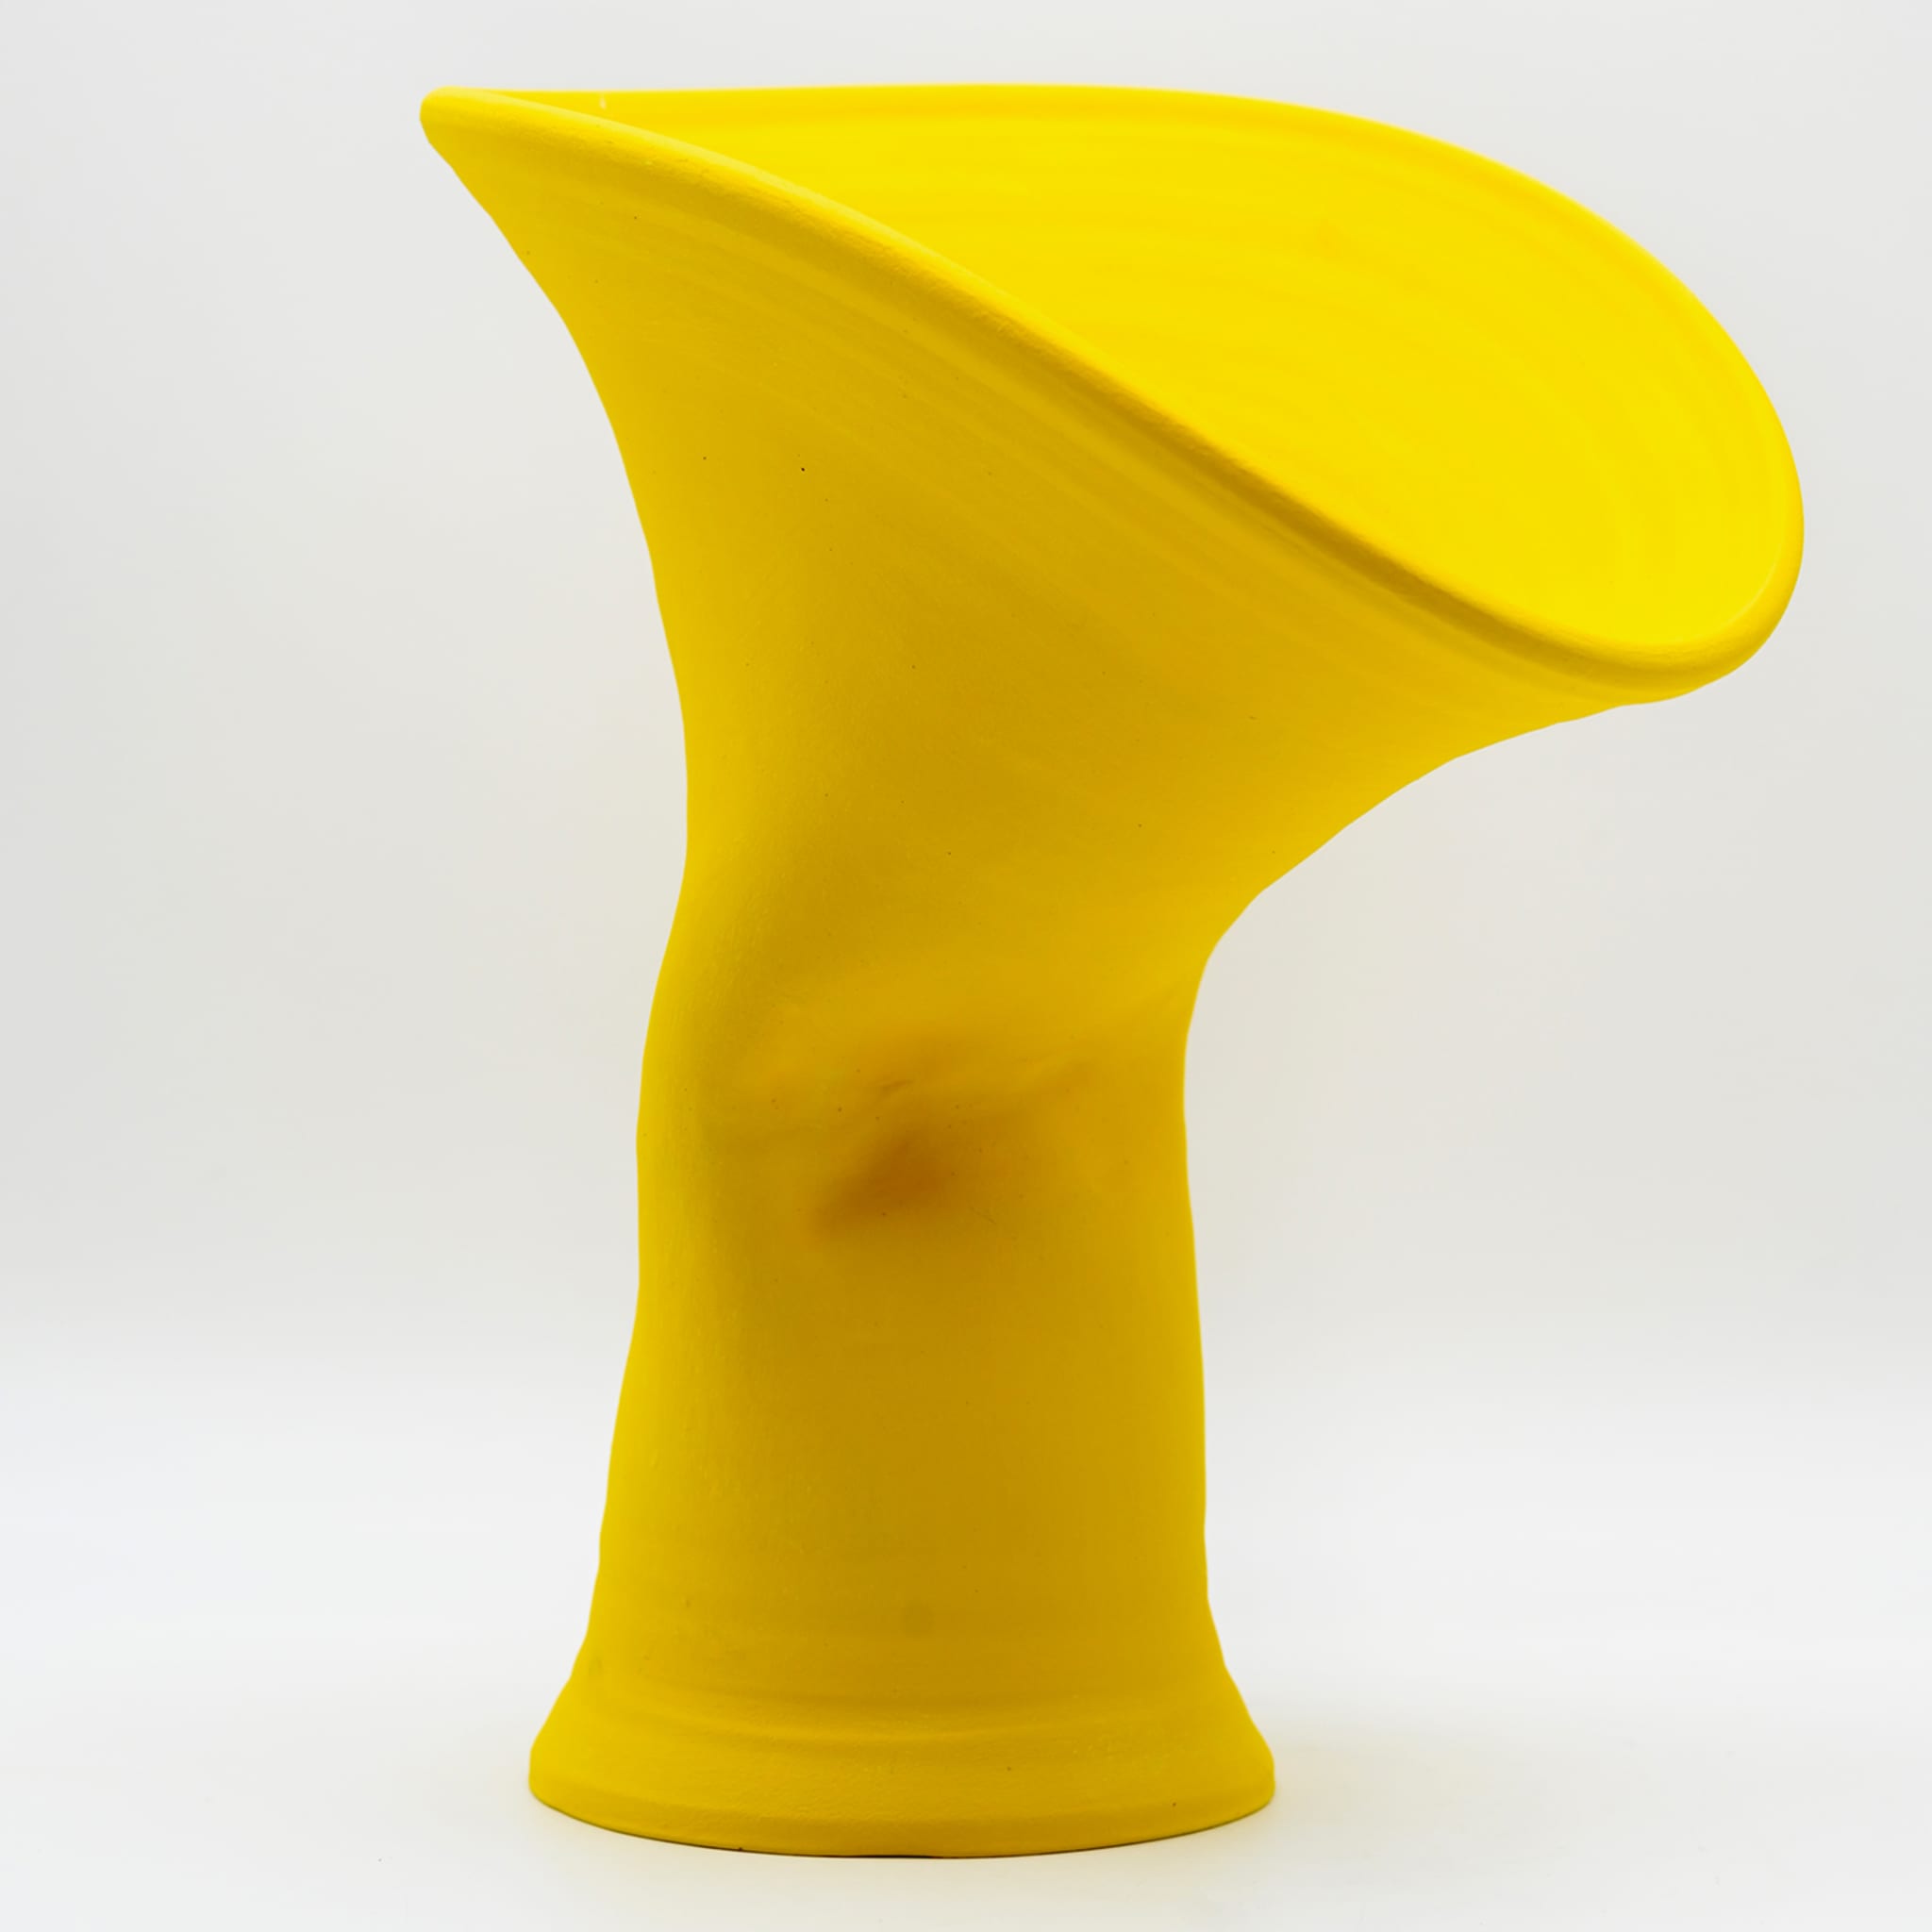 Yellow Vase - Alternative view 1